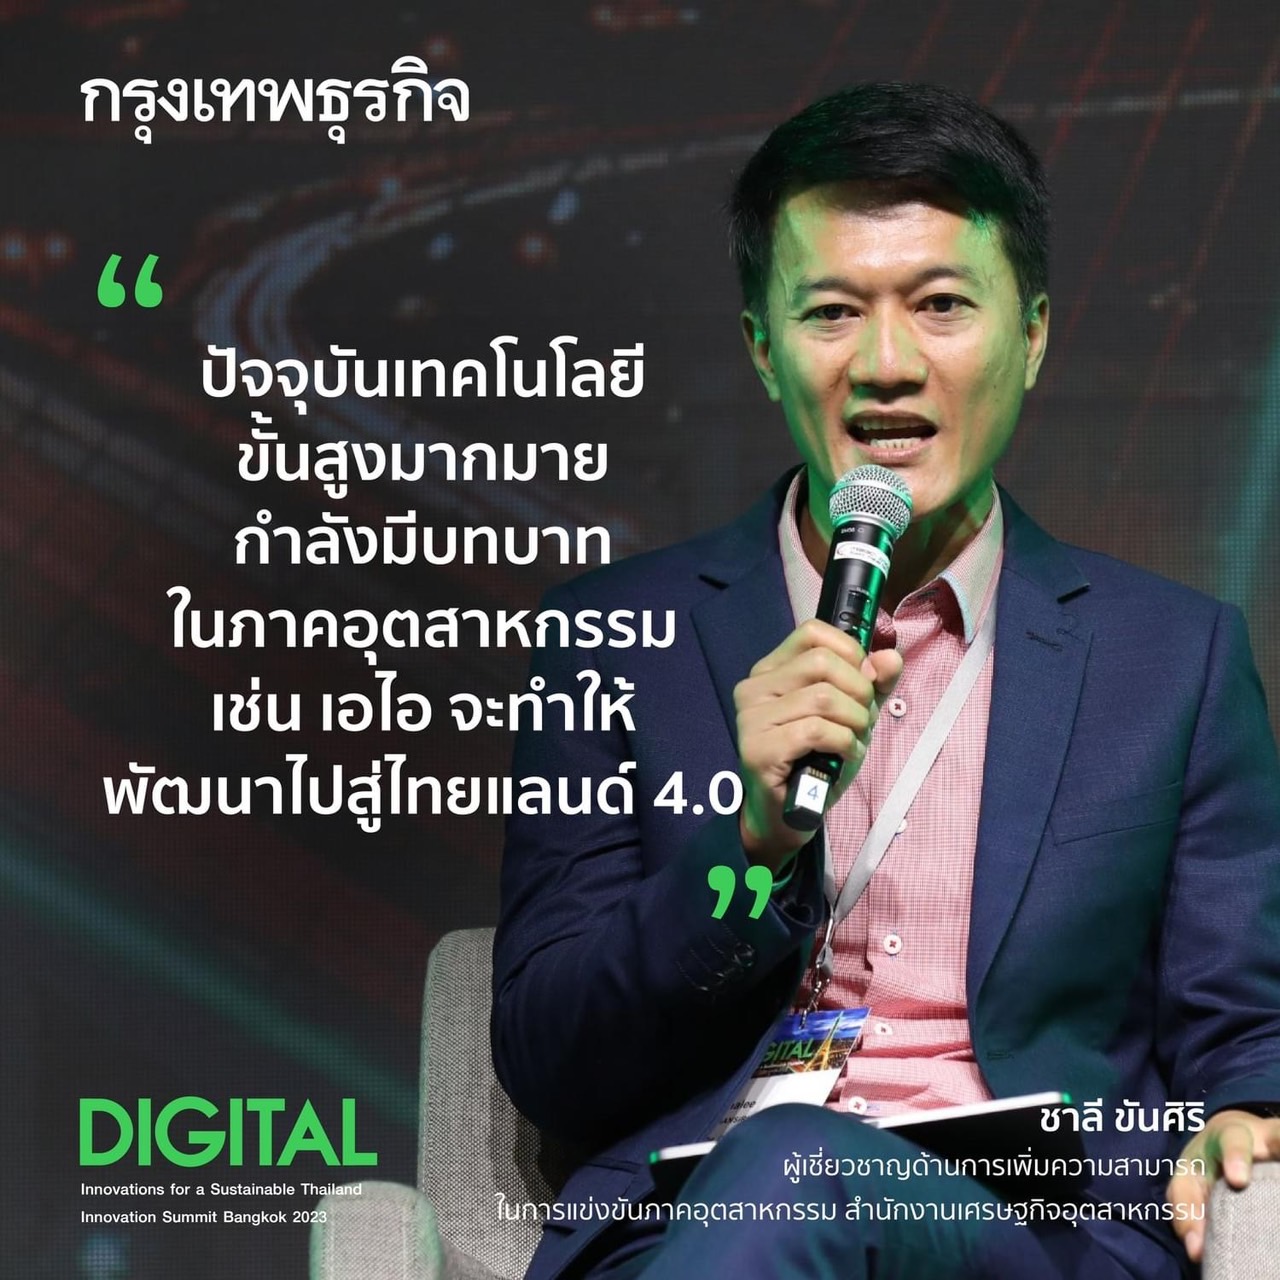 สวนานานาชาติ หัวข้อ “Thailand transformation towards Sustainability ภายใต้งานนิทรรศการแสดงเทคโนโลยีและนวัตกรรมแห่งปี “Innovation Summit Bangkok 2023 : Innovations for a Sustainable Thailand”